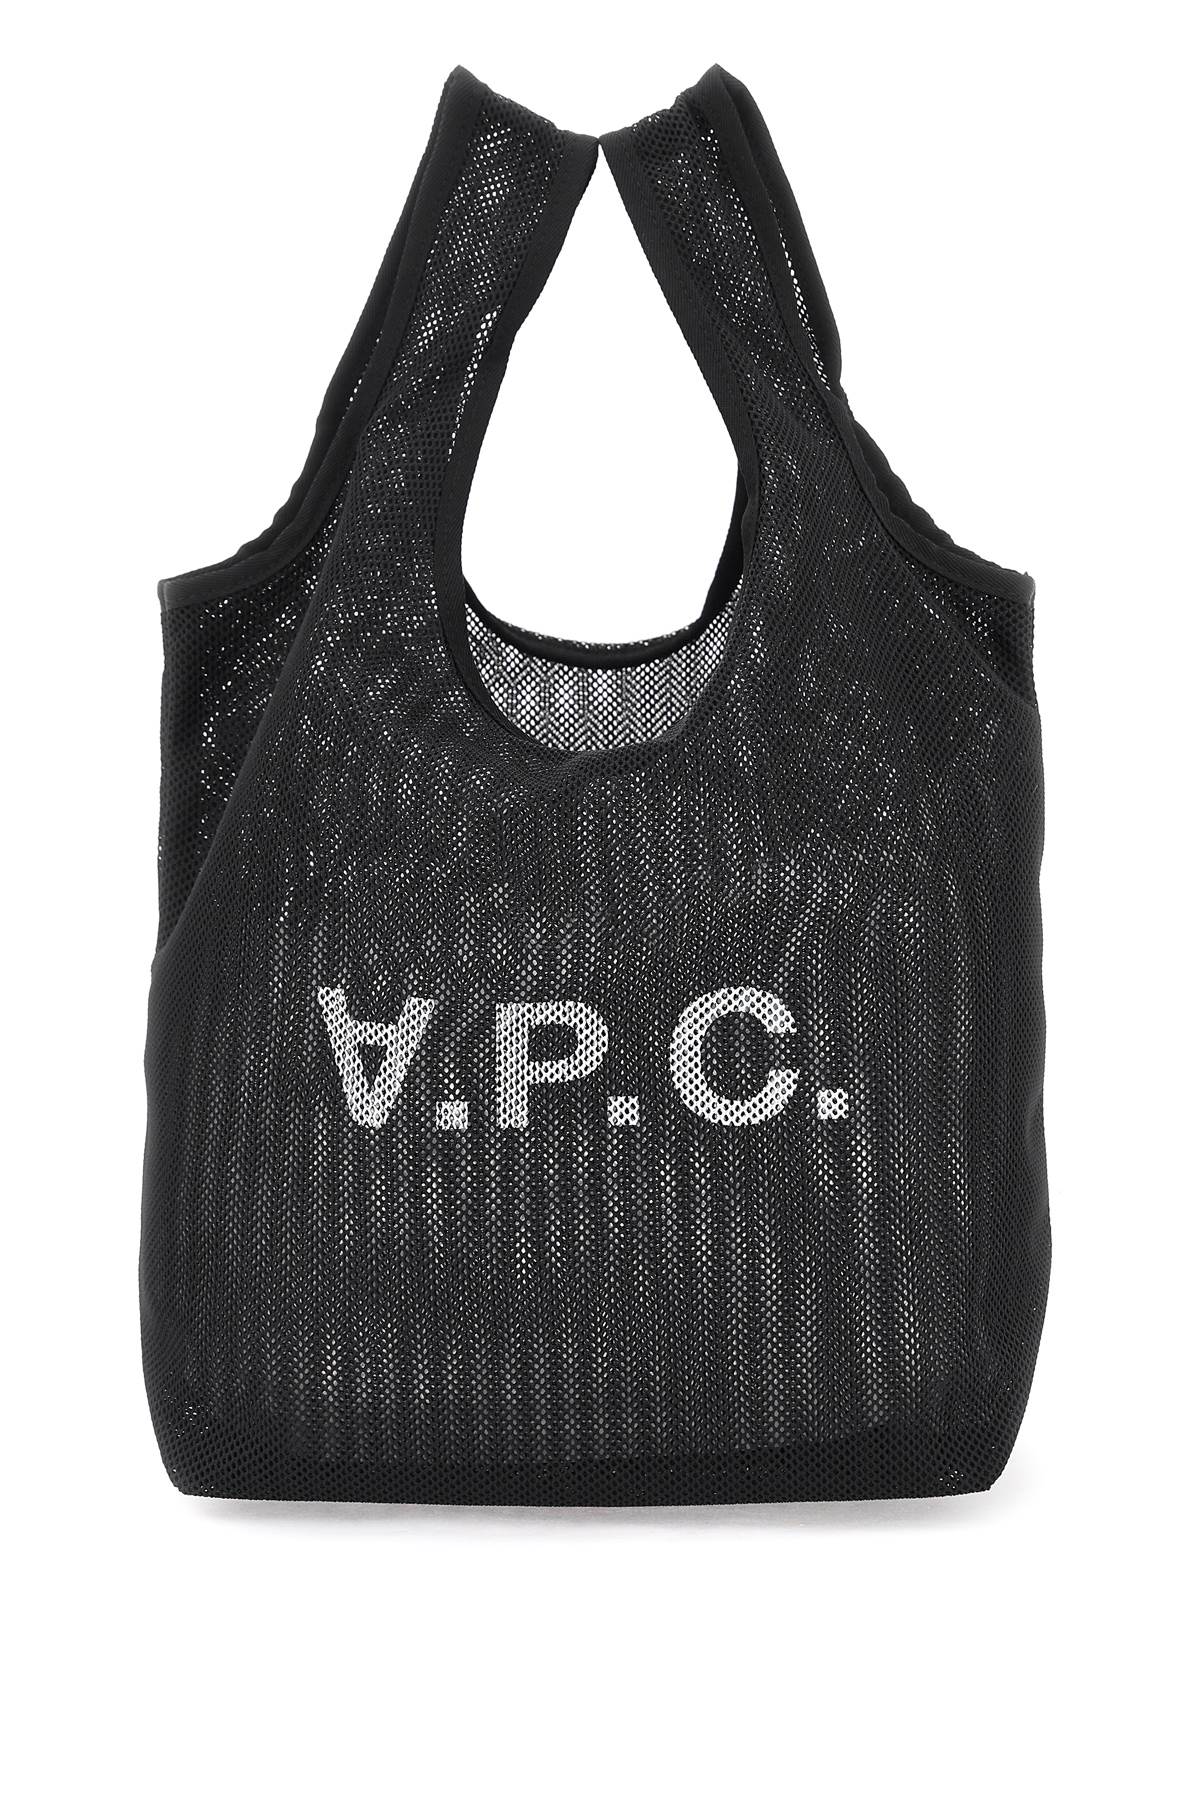 A.P.C. Rebound Tote Bag   Black